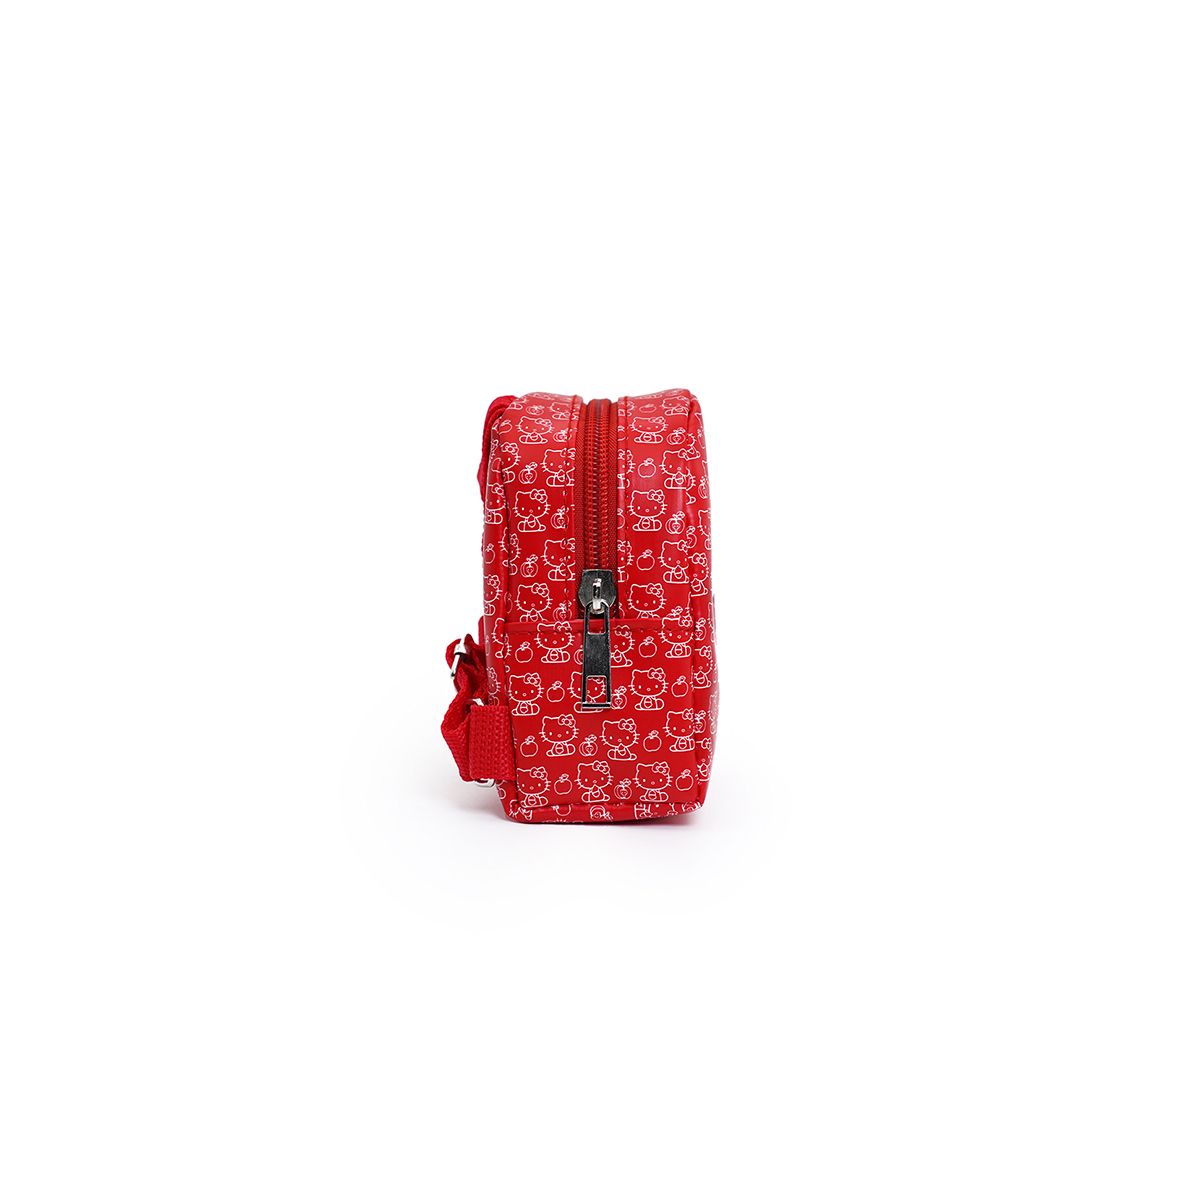 Колекційна сумочка-сюрприз "Hello Kitty: Червона Кітті", 12 см